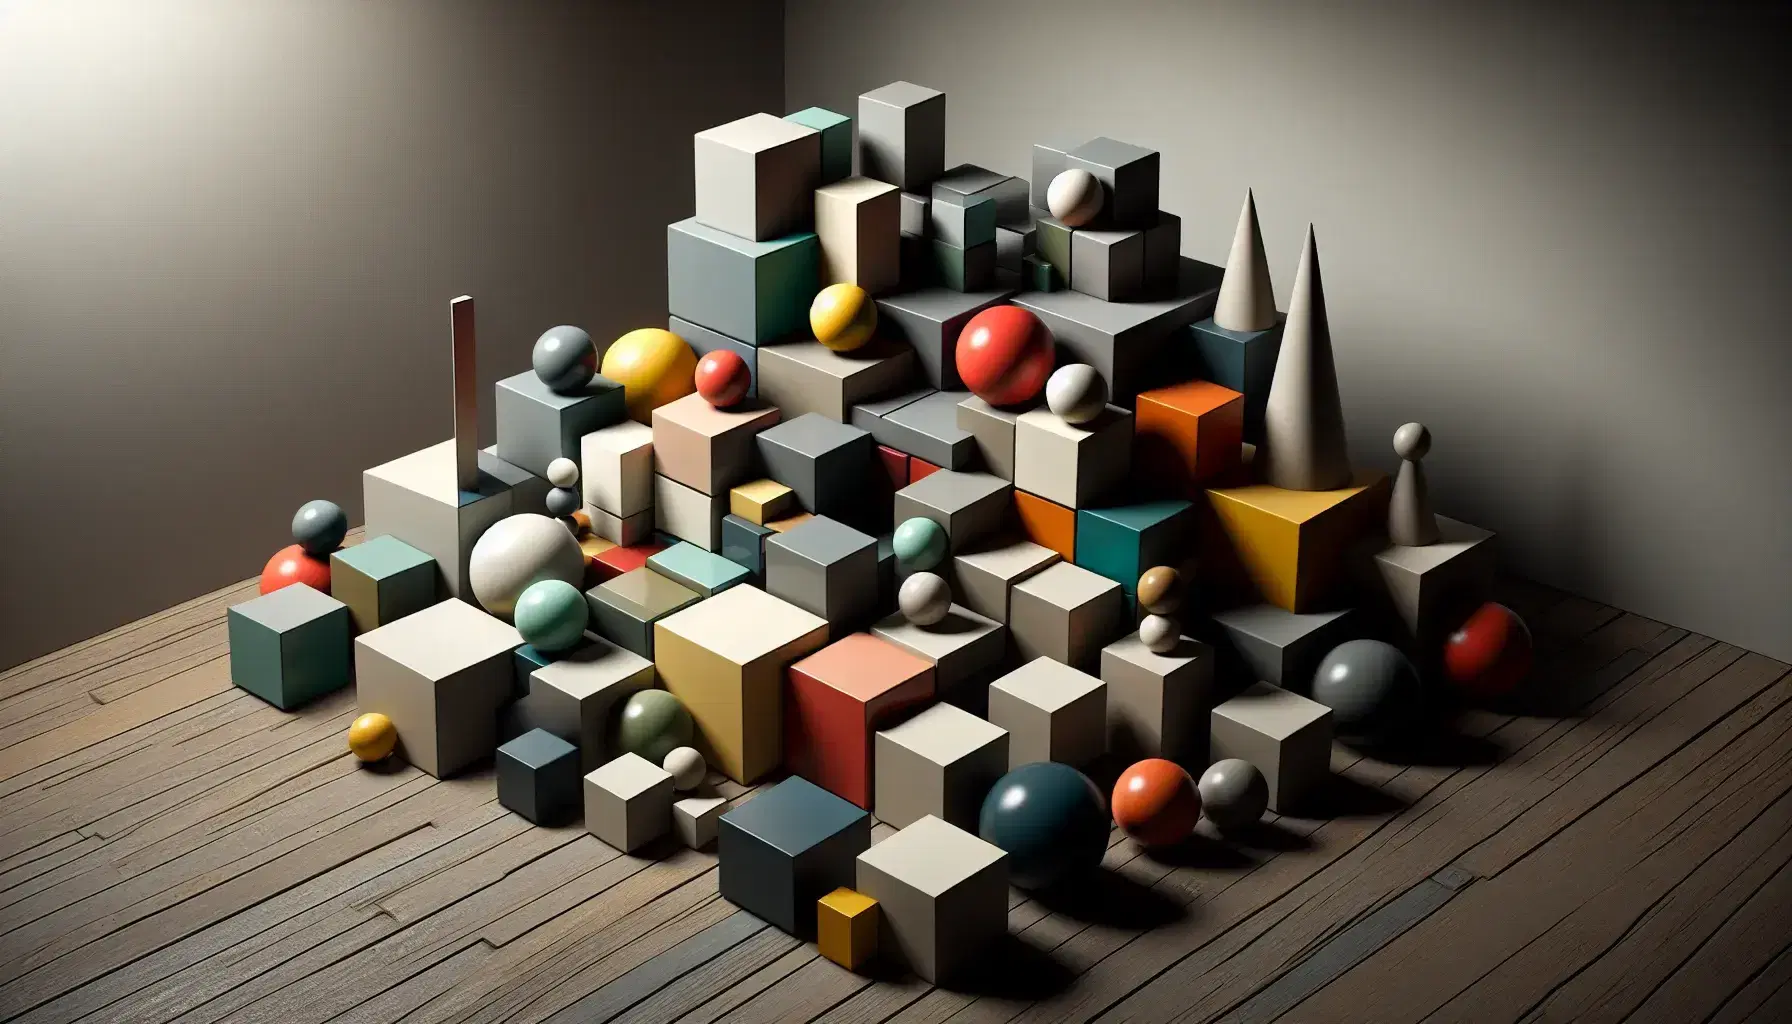 Composizione di oggetti geometrici tridimensionali colorati su tavolo scuro con ombre che creano profondità.